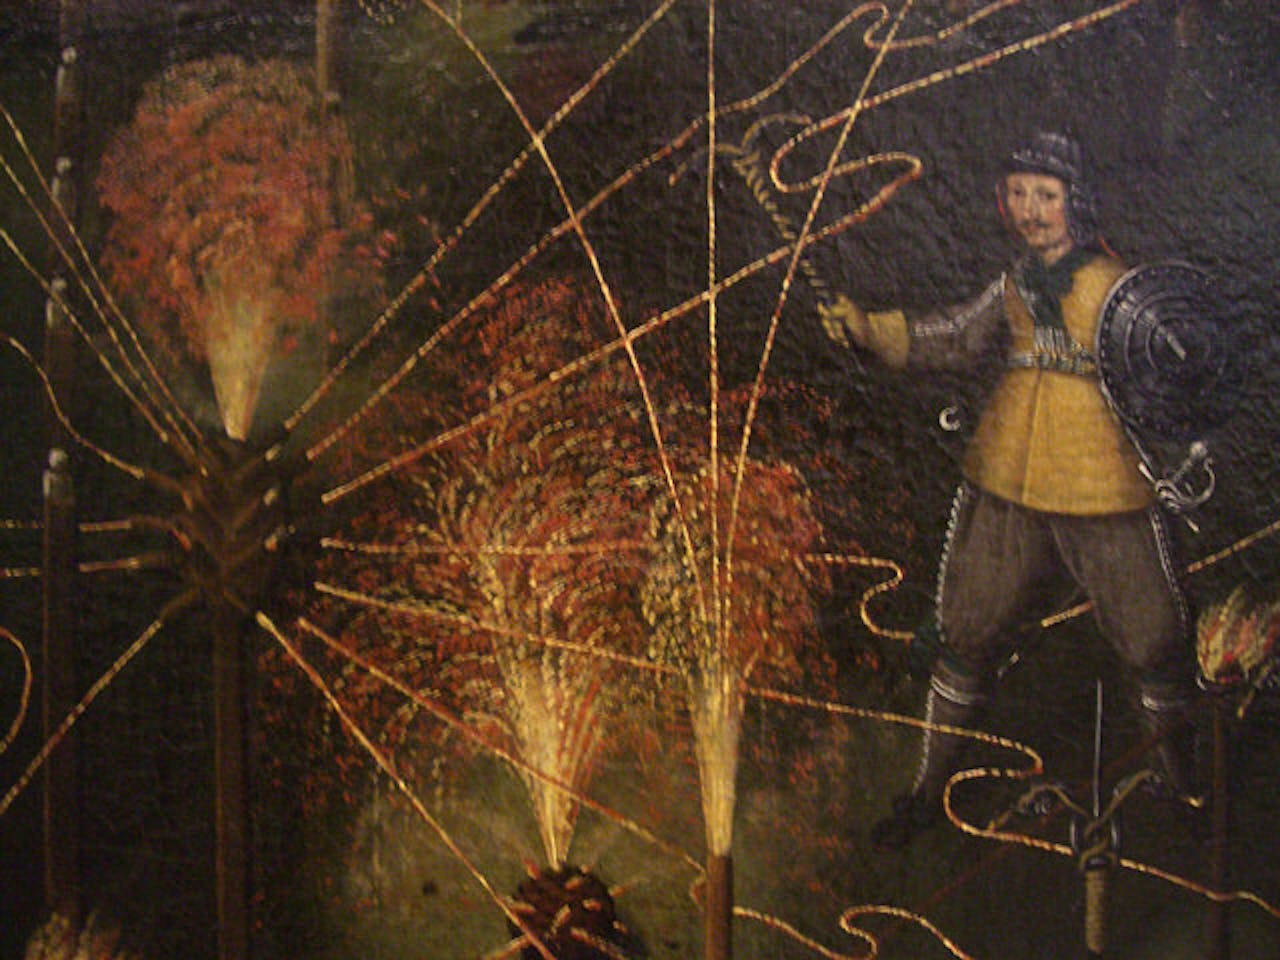 Schilderij van Joseph Furttenbach uit 1645. Er staat een militair op die vuurwerk afsteekt.